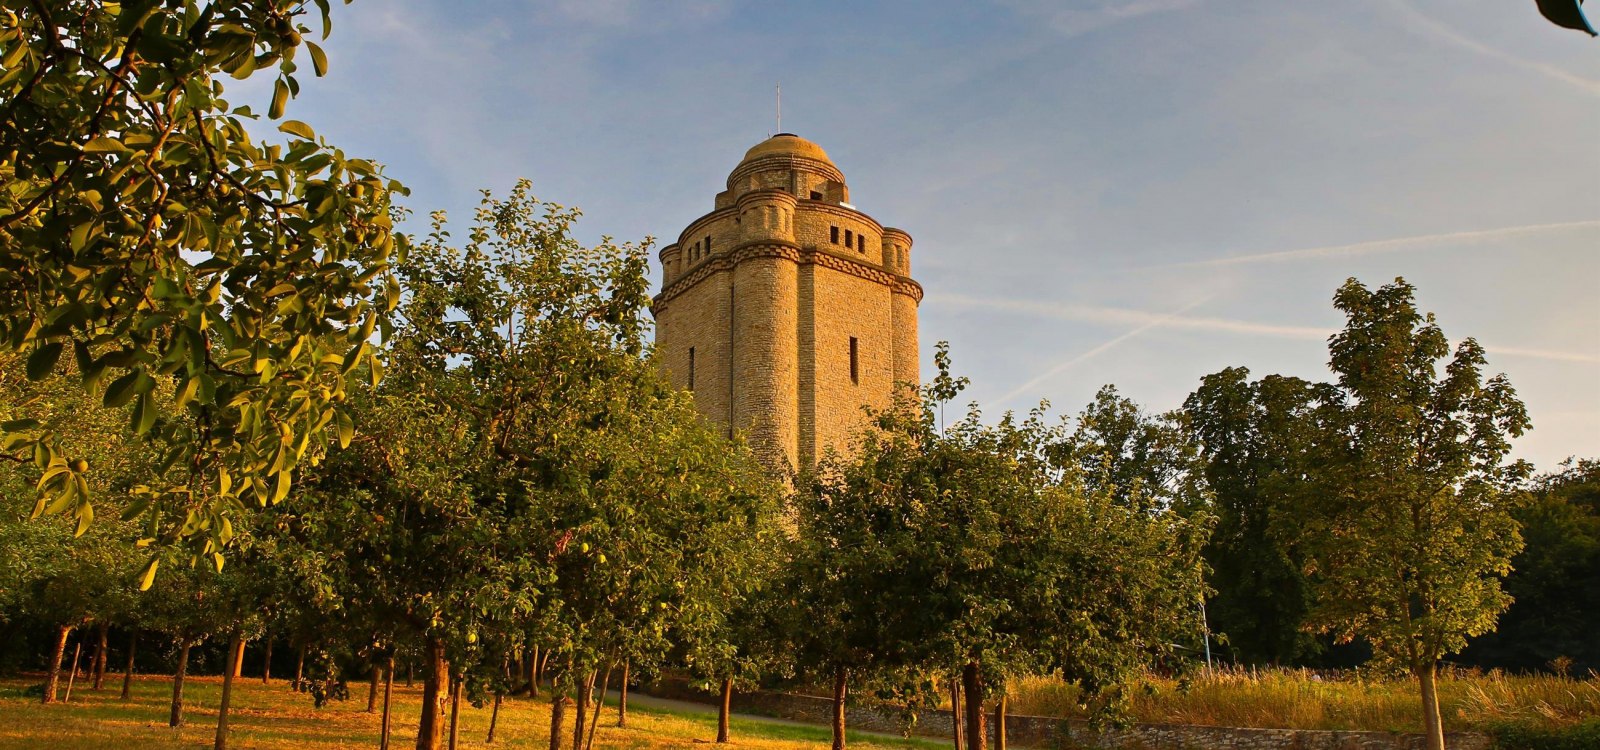 Bismarck toren met fruitbomen